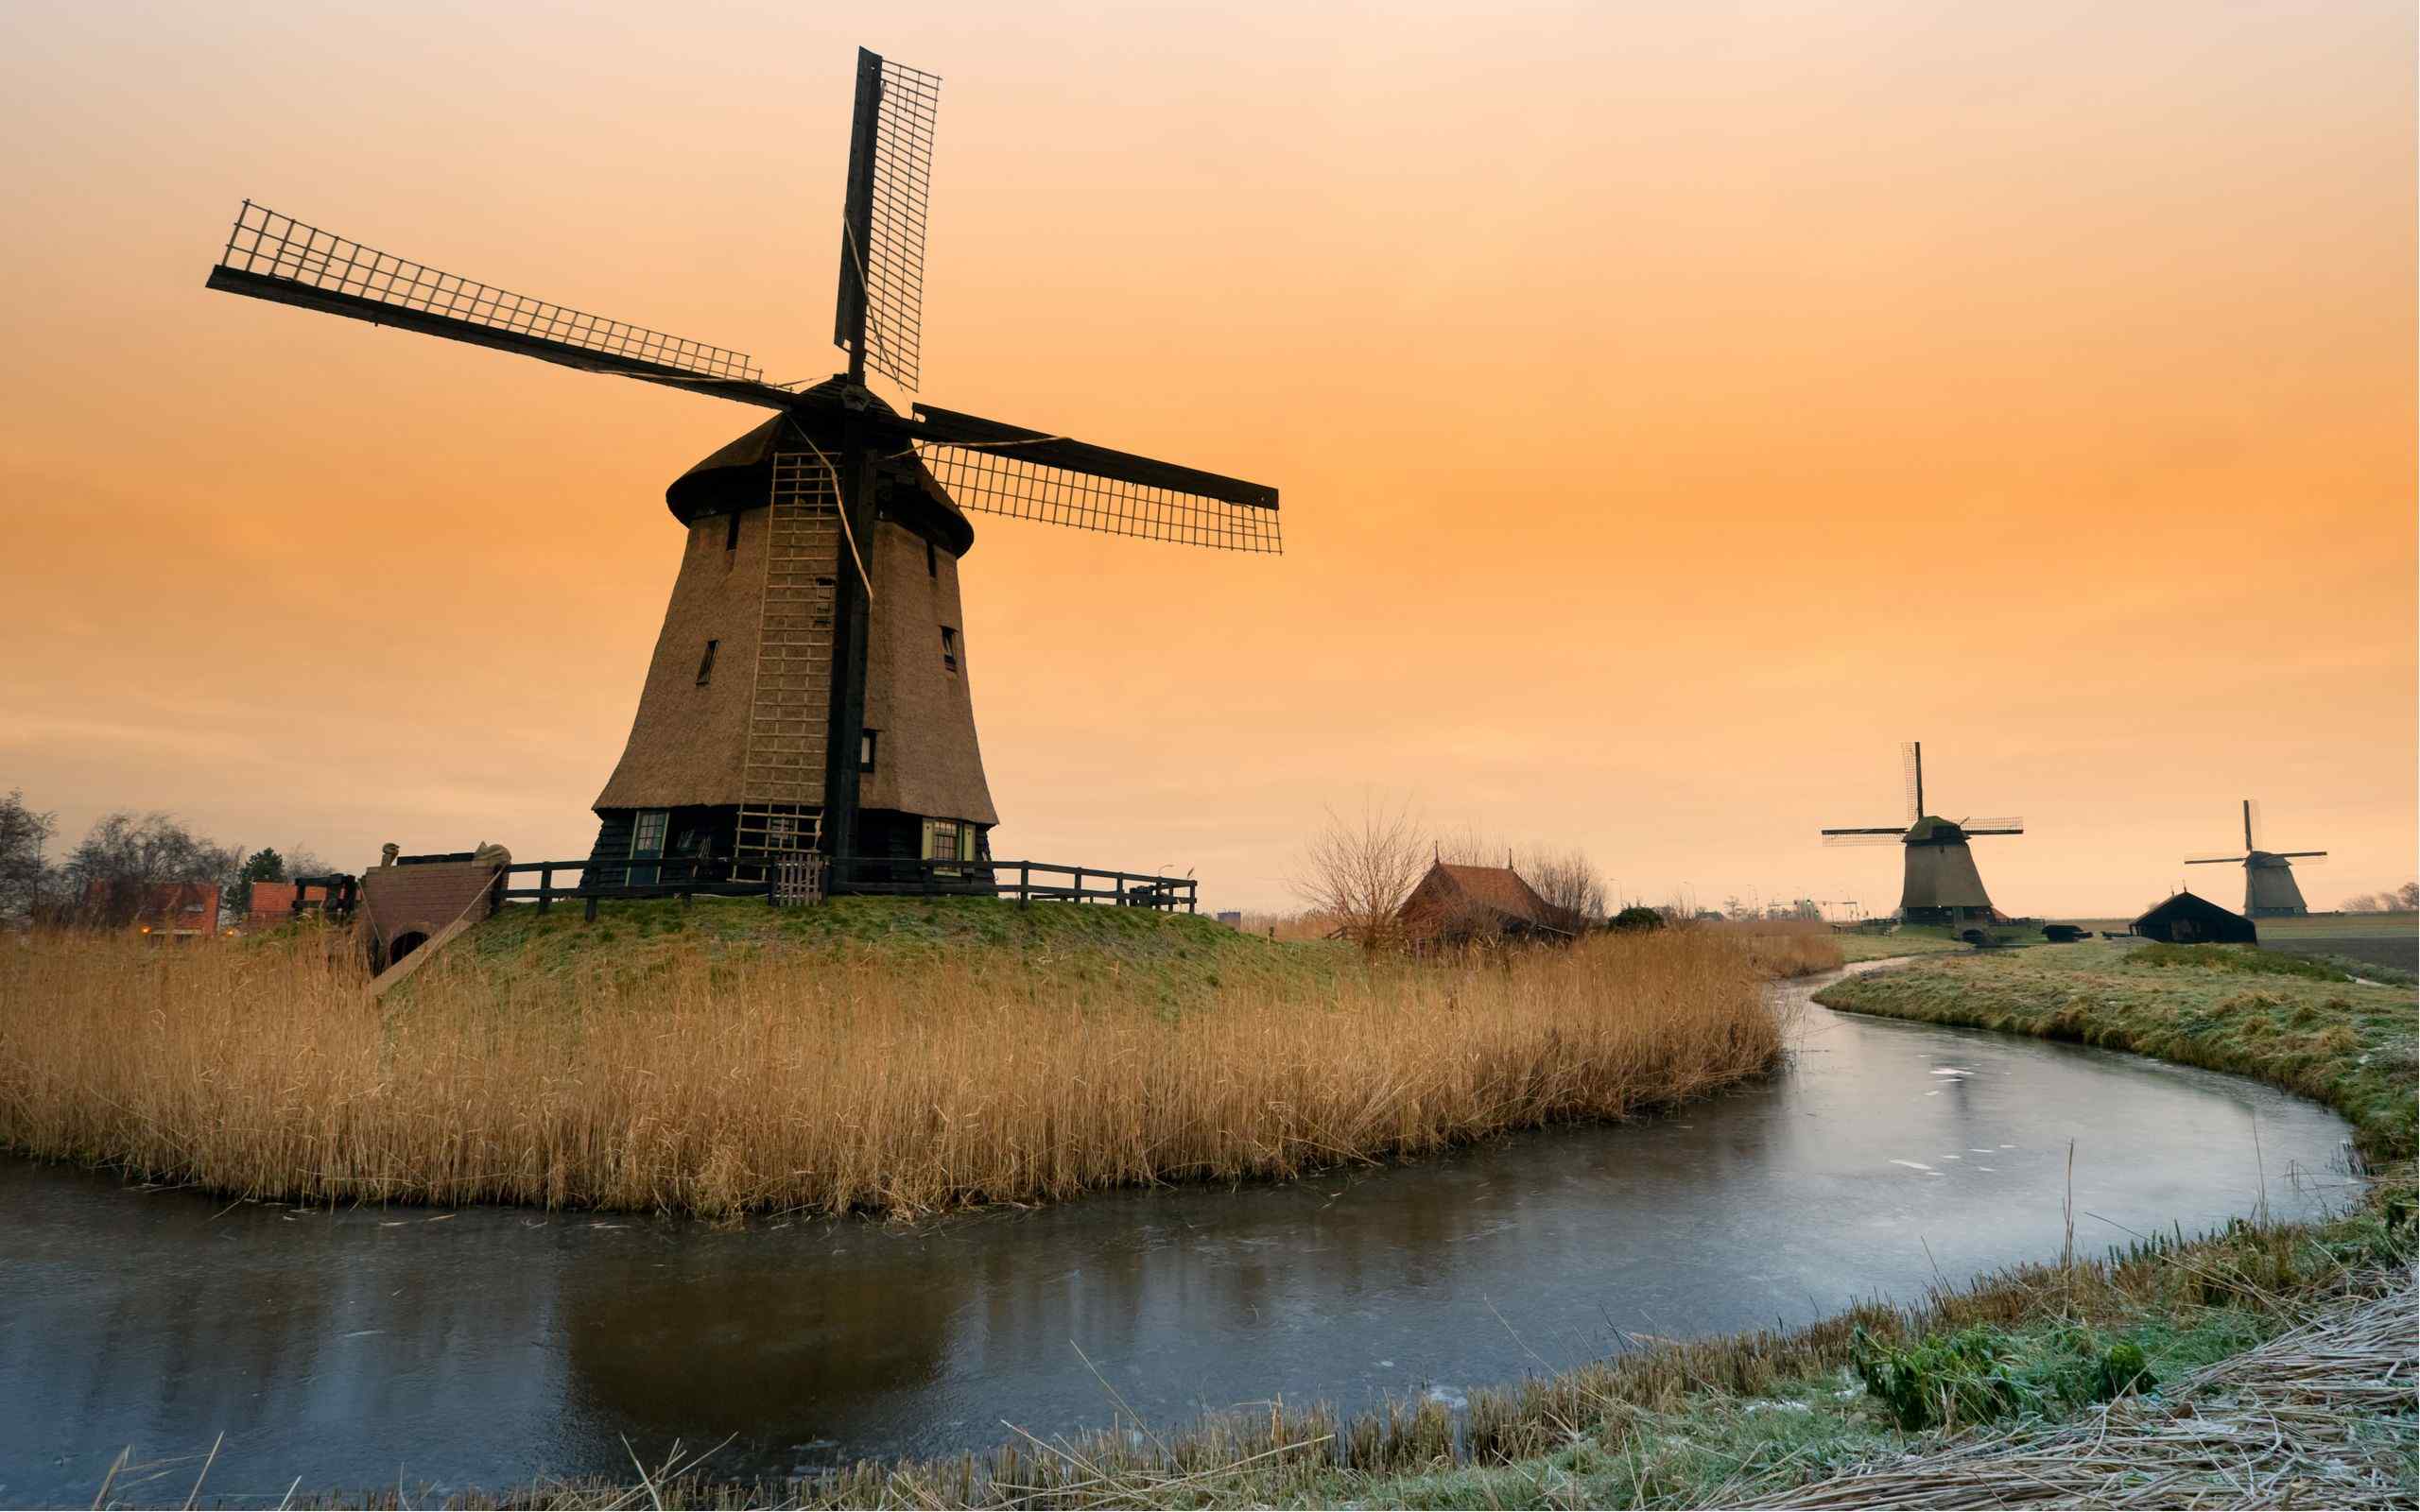 唯美荷兰风车风景图片桌面壁纸